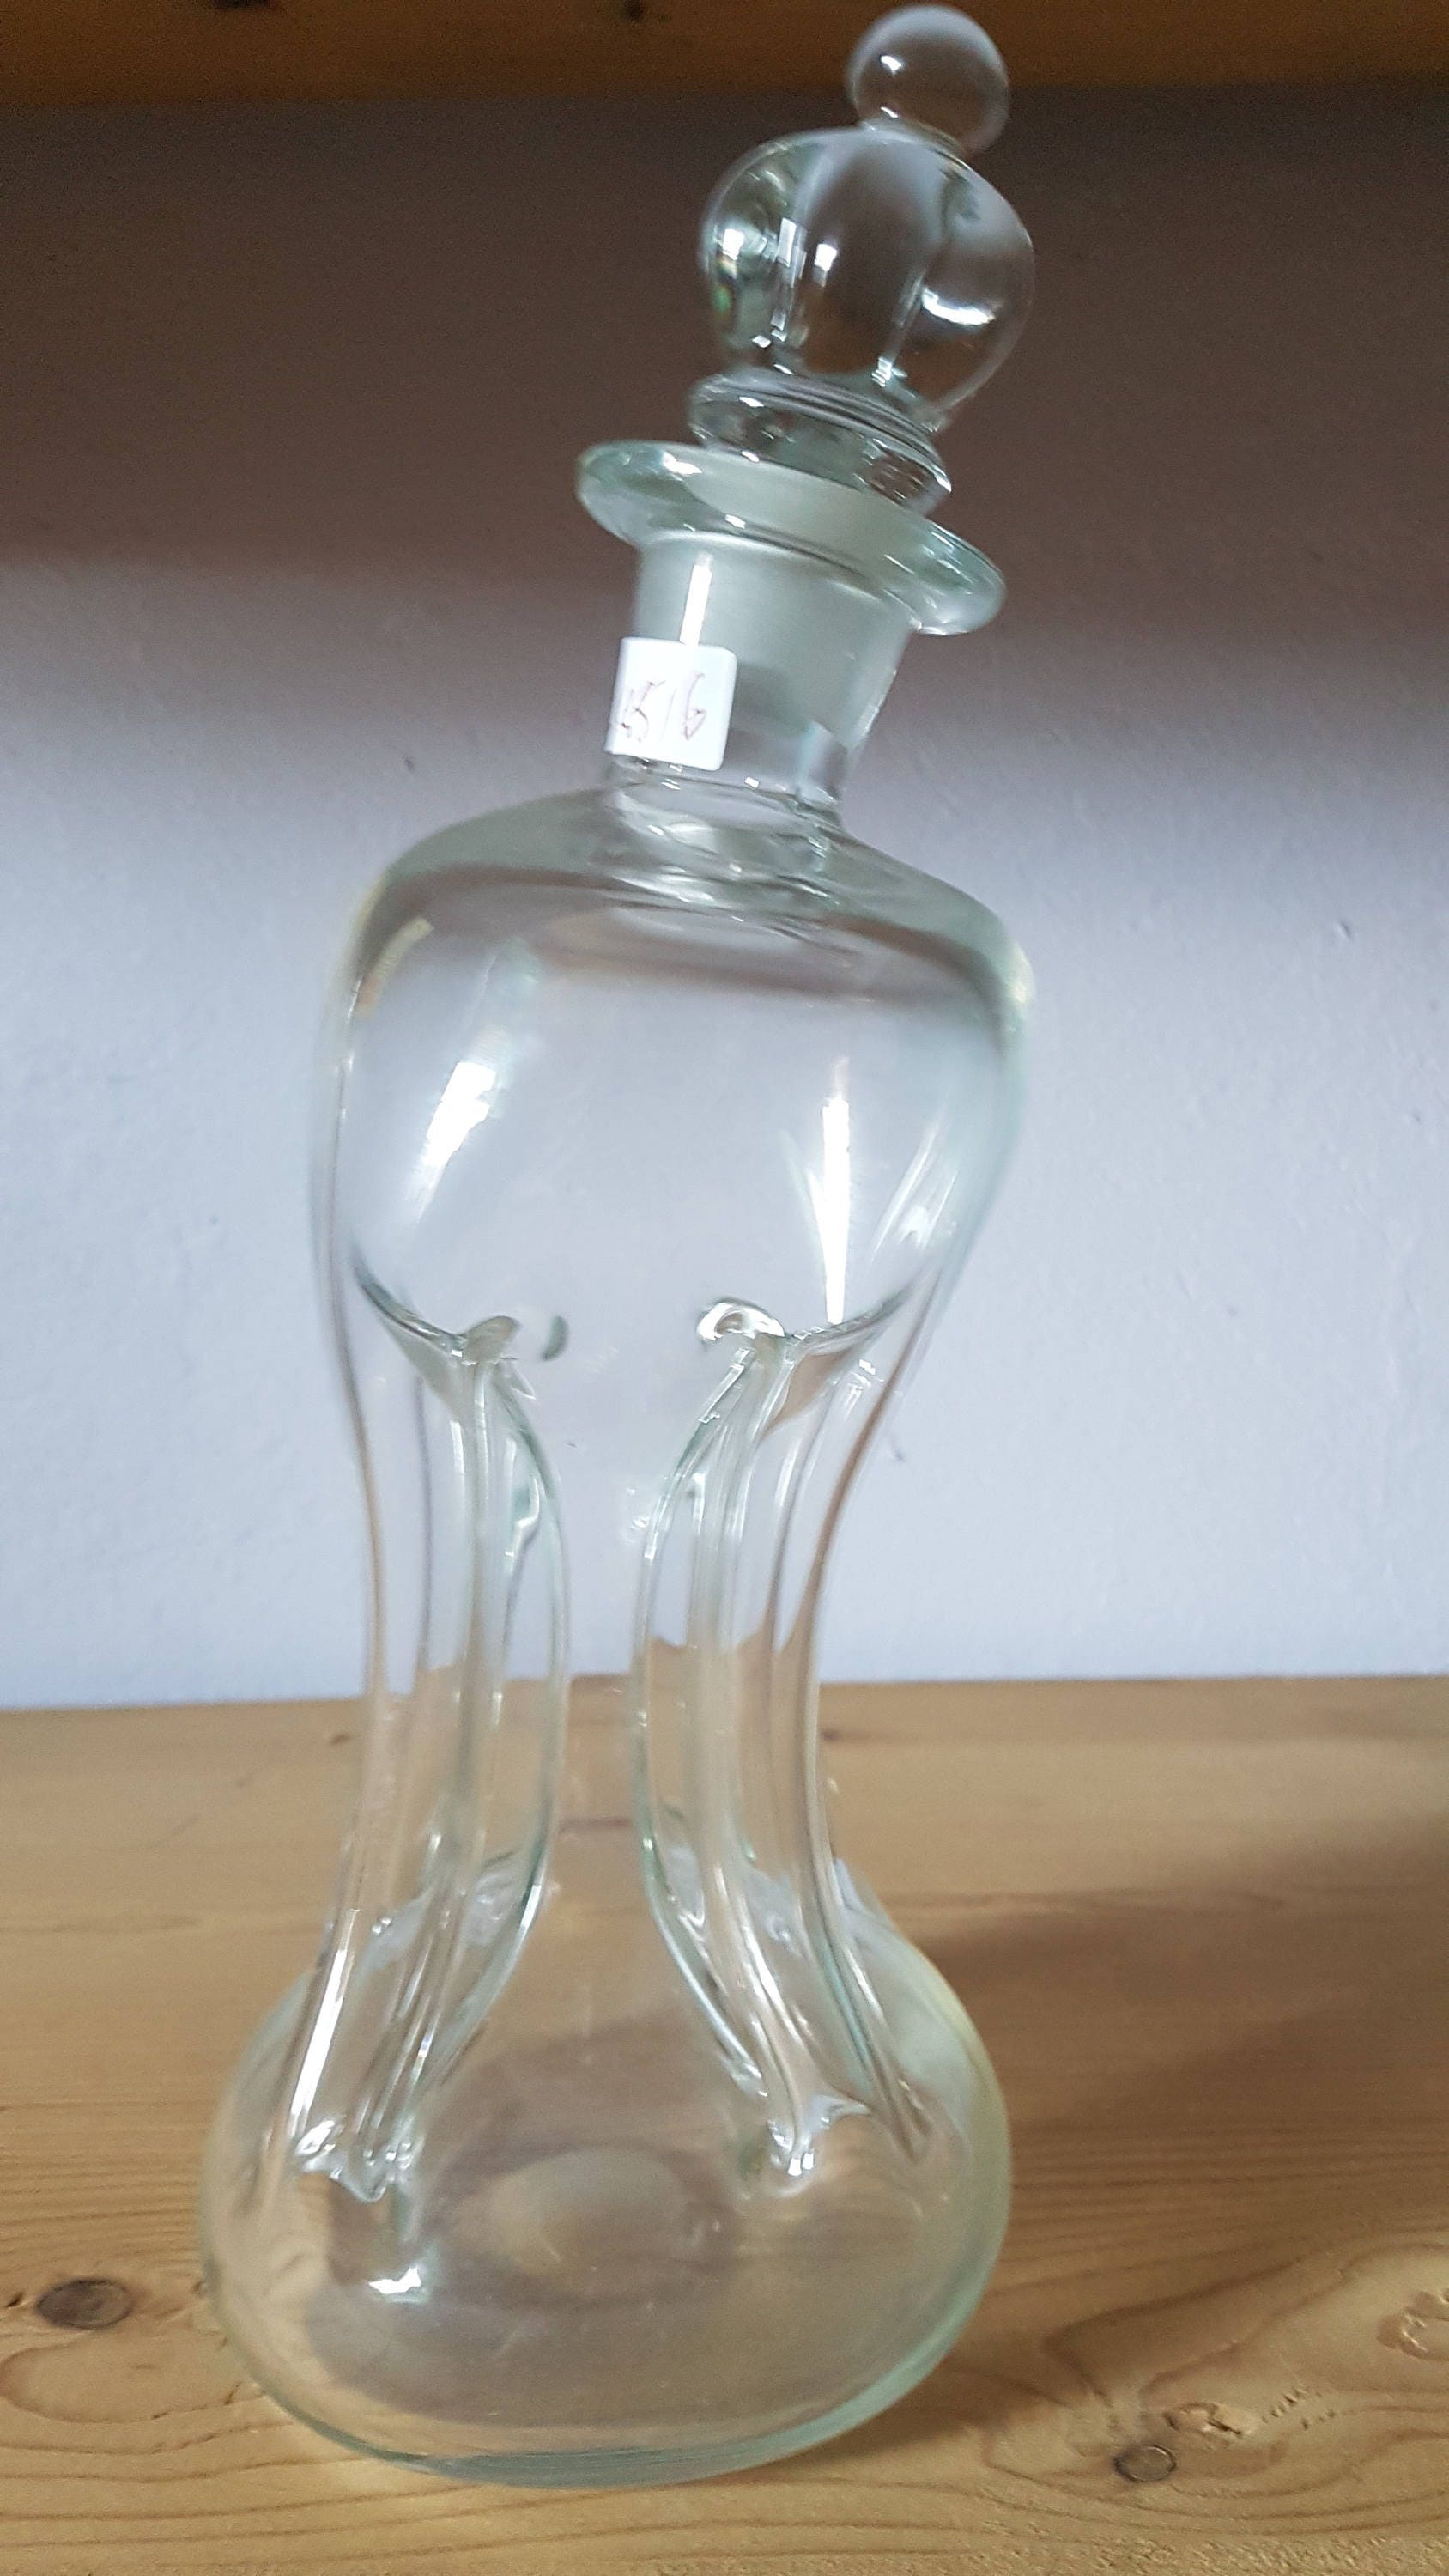 Holmegaard Kastrup Kluk Kluk decanter / bottle with crown stopper - Denmark